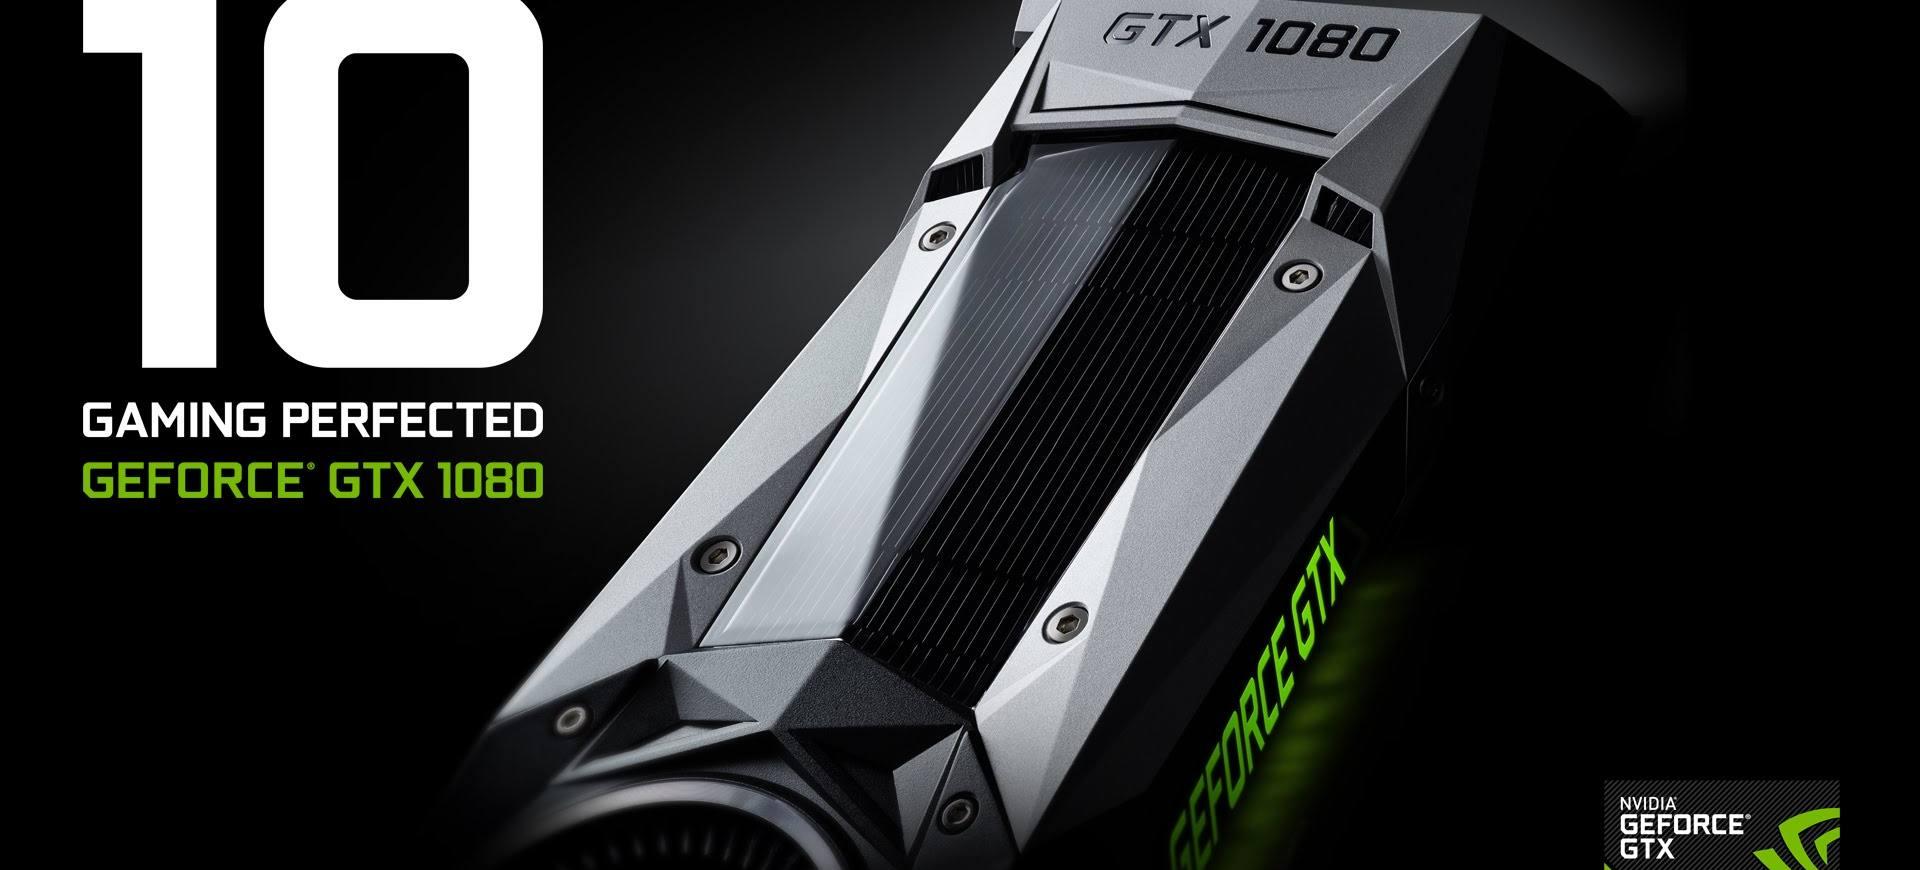 Rò rỉ thông tin mới của card đồ họa GeForce GTX 1060